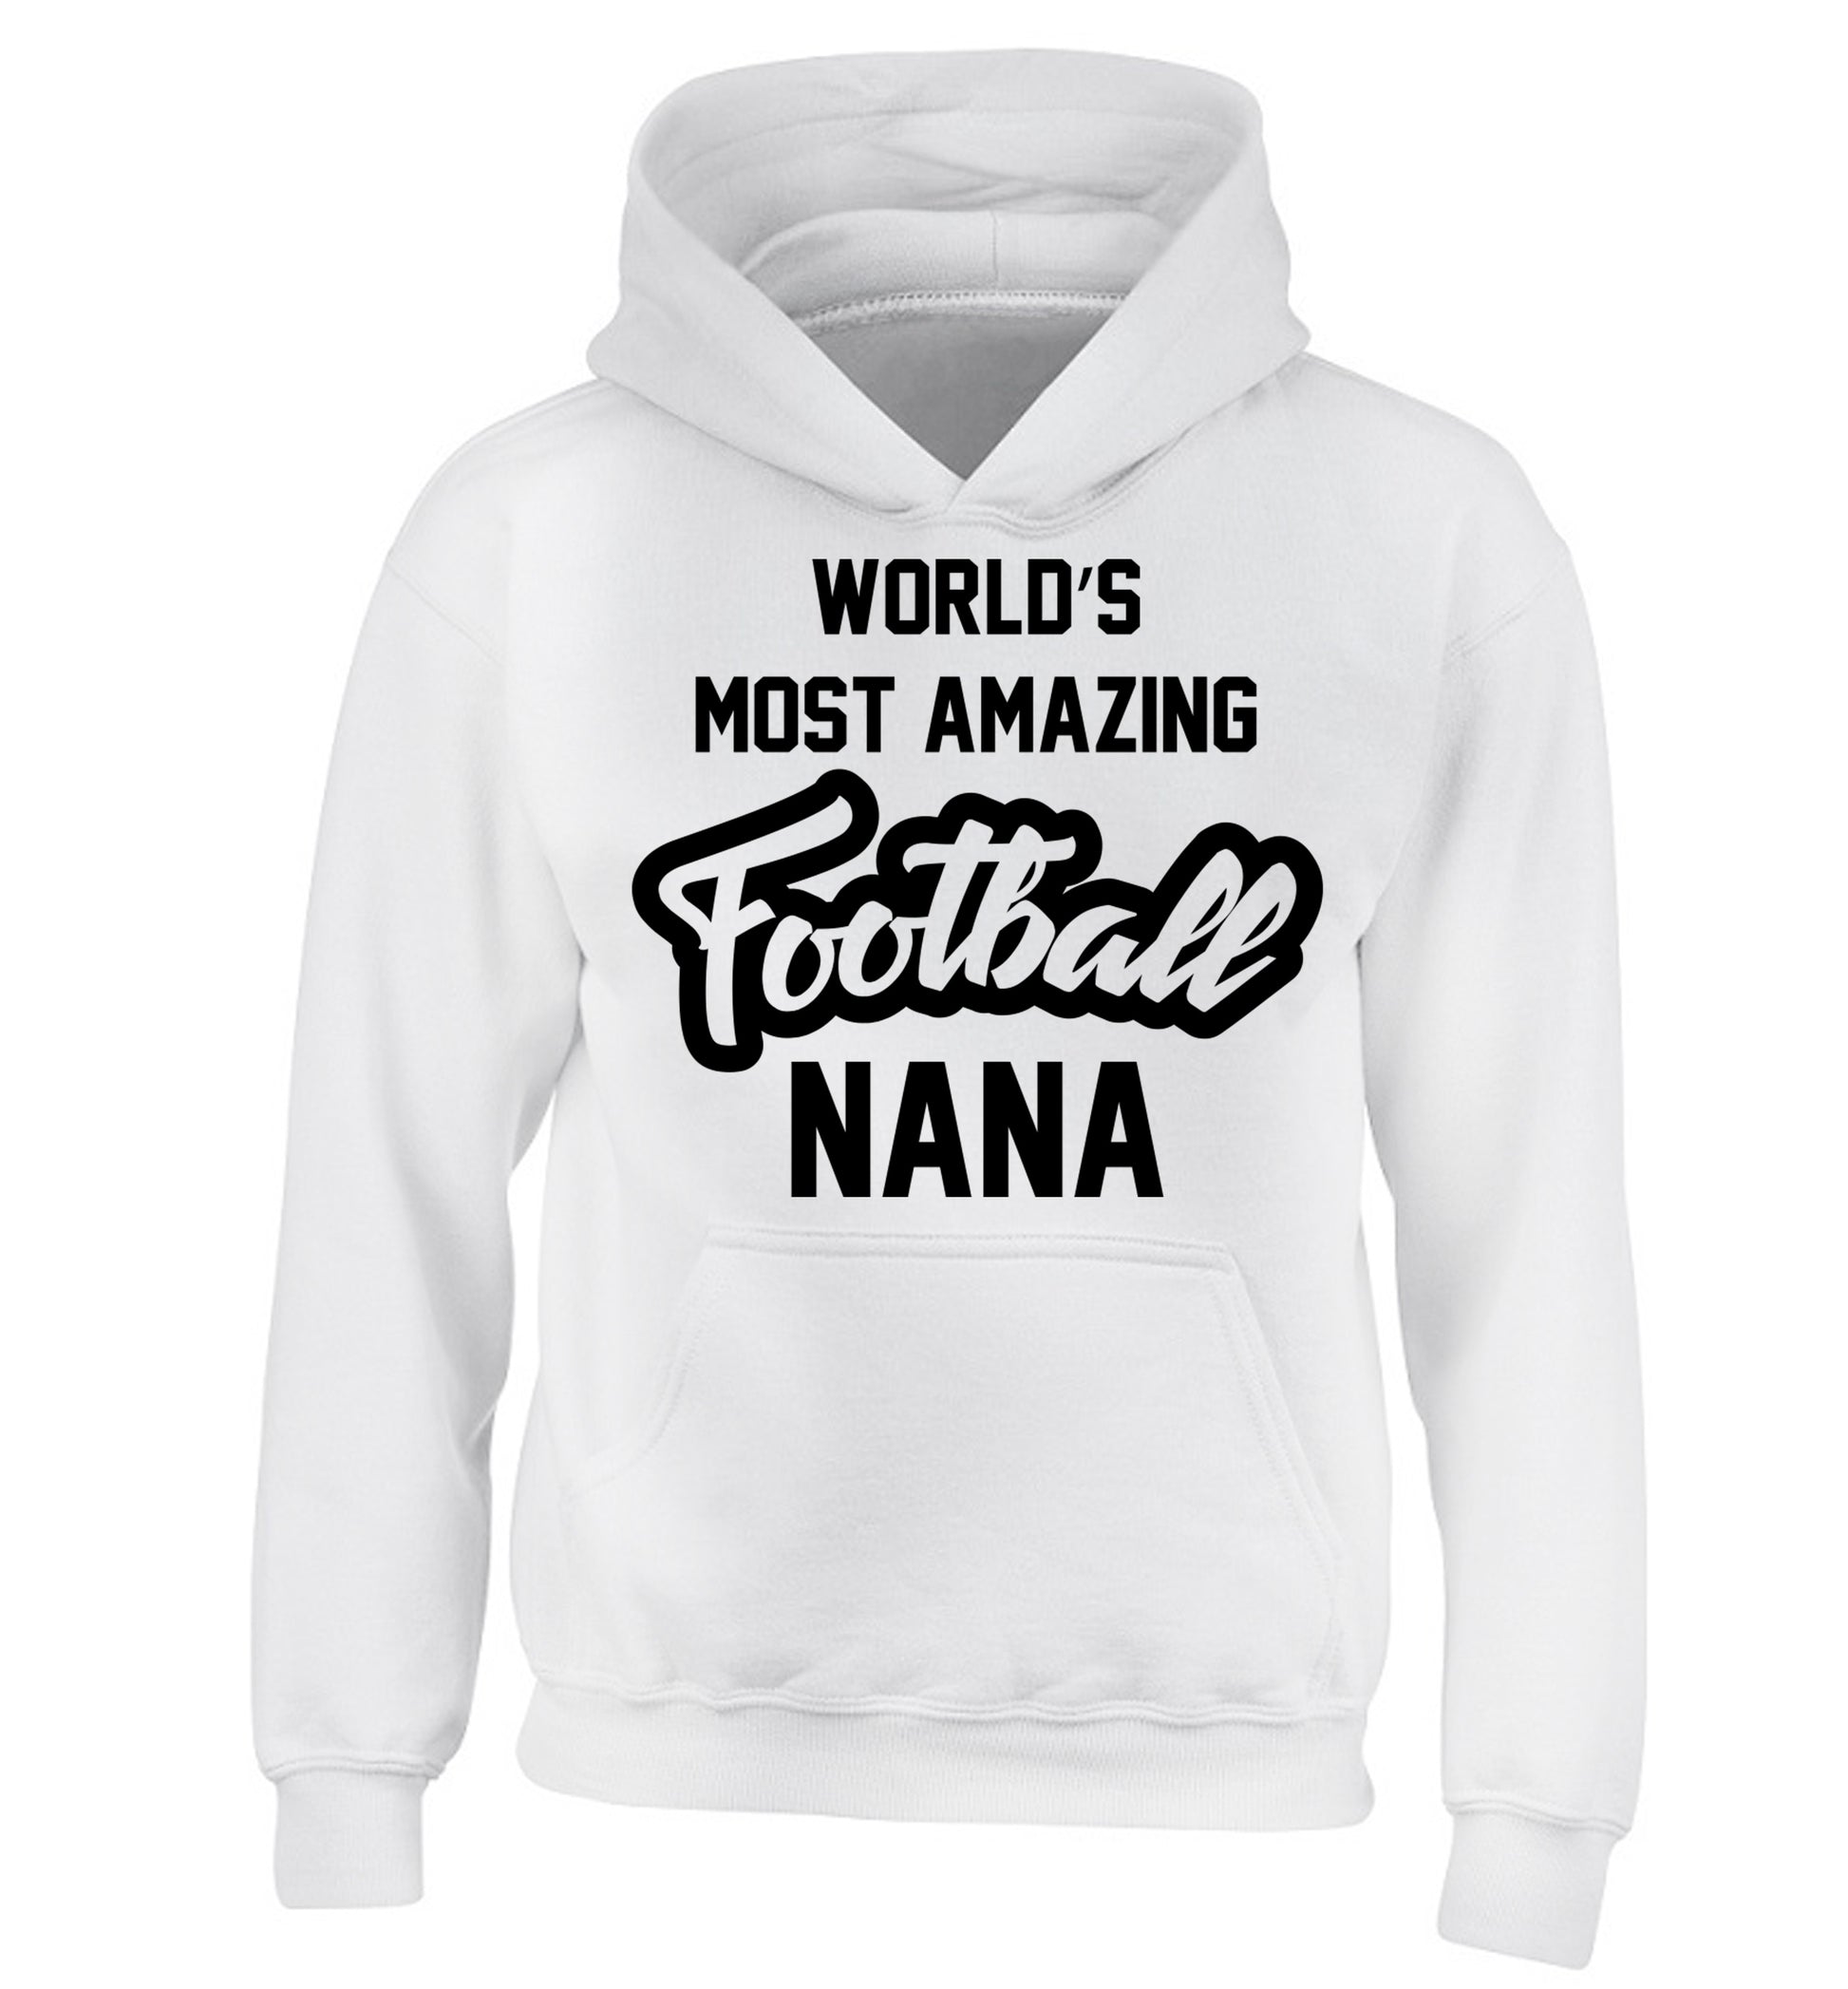 Worlds most amazing football nana children's white hoodie 12-14 Years